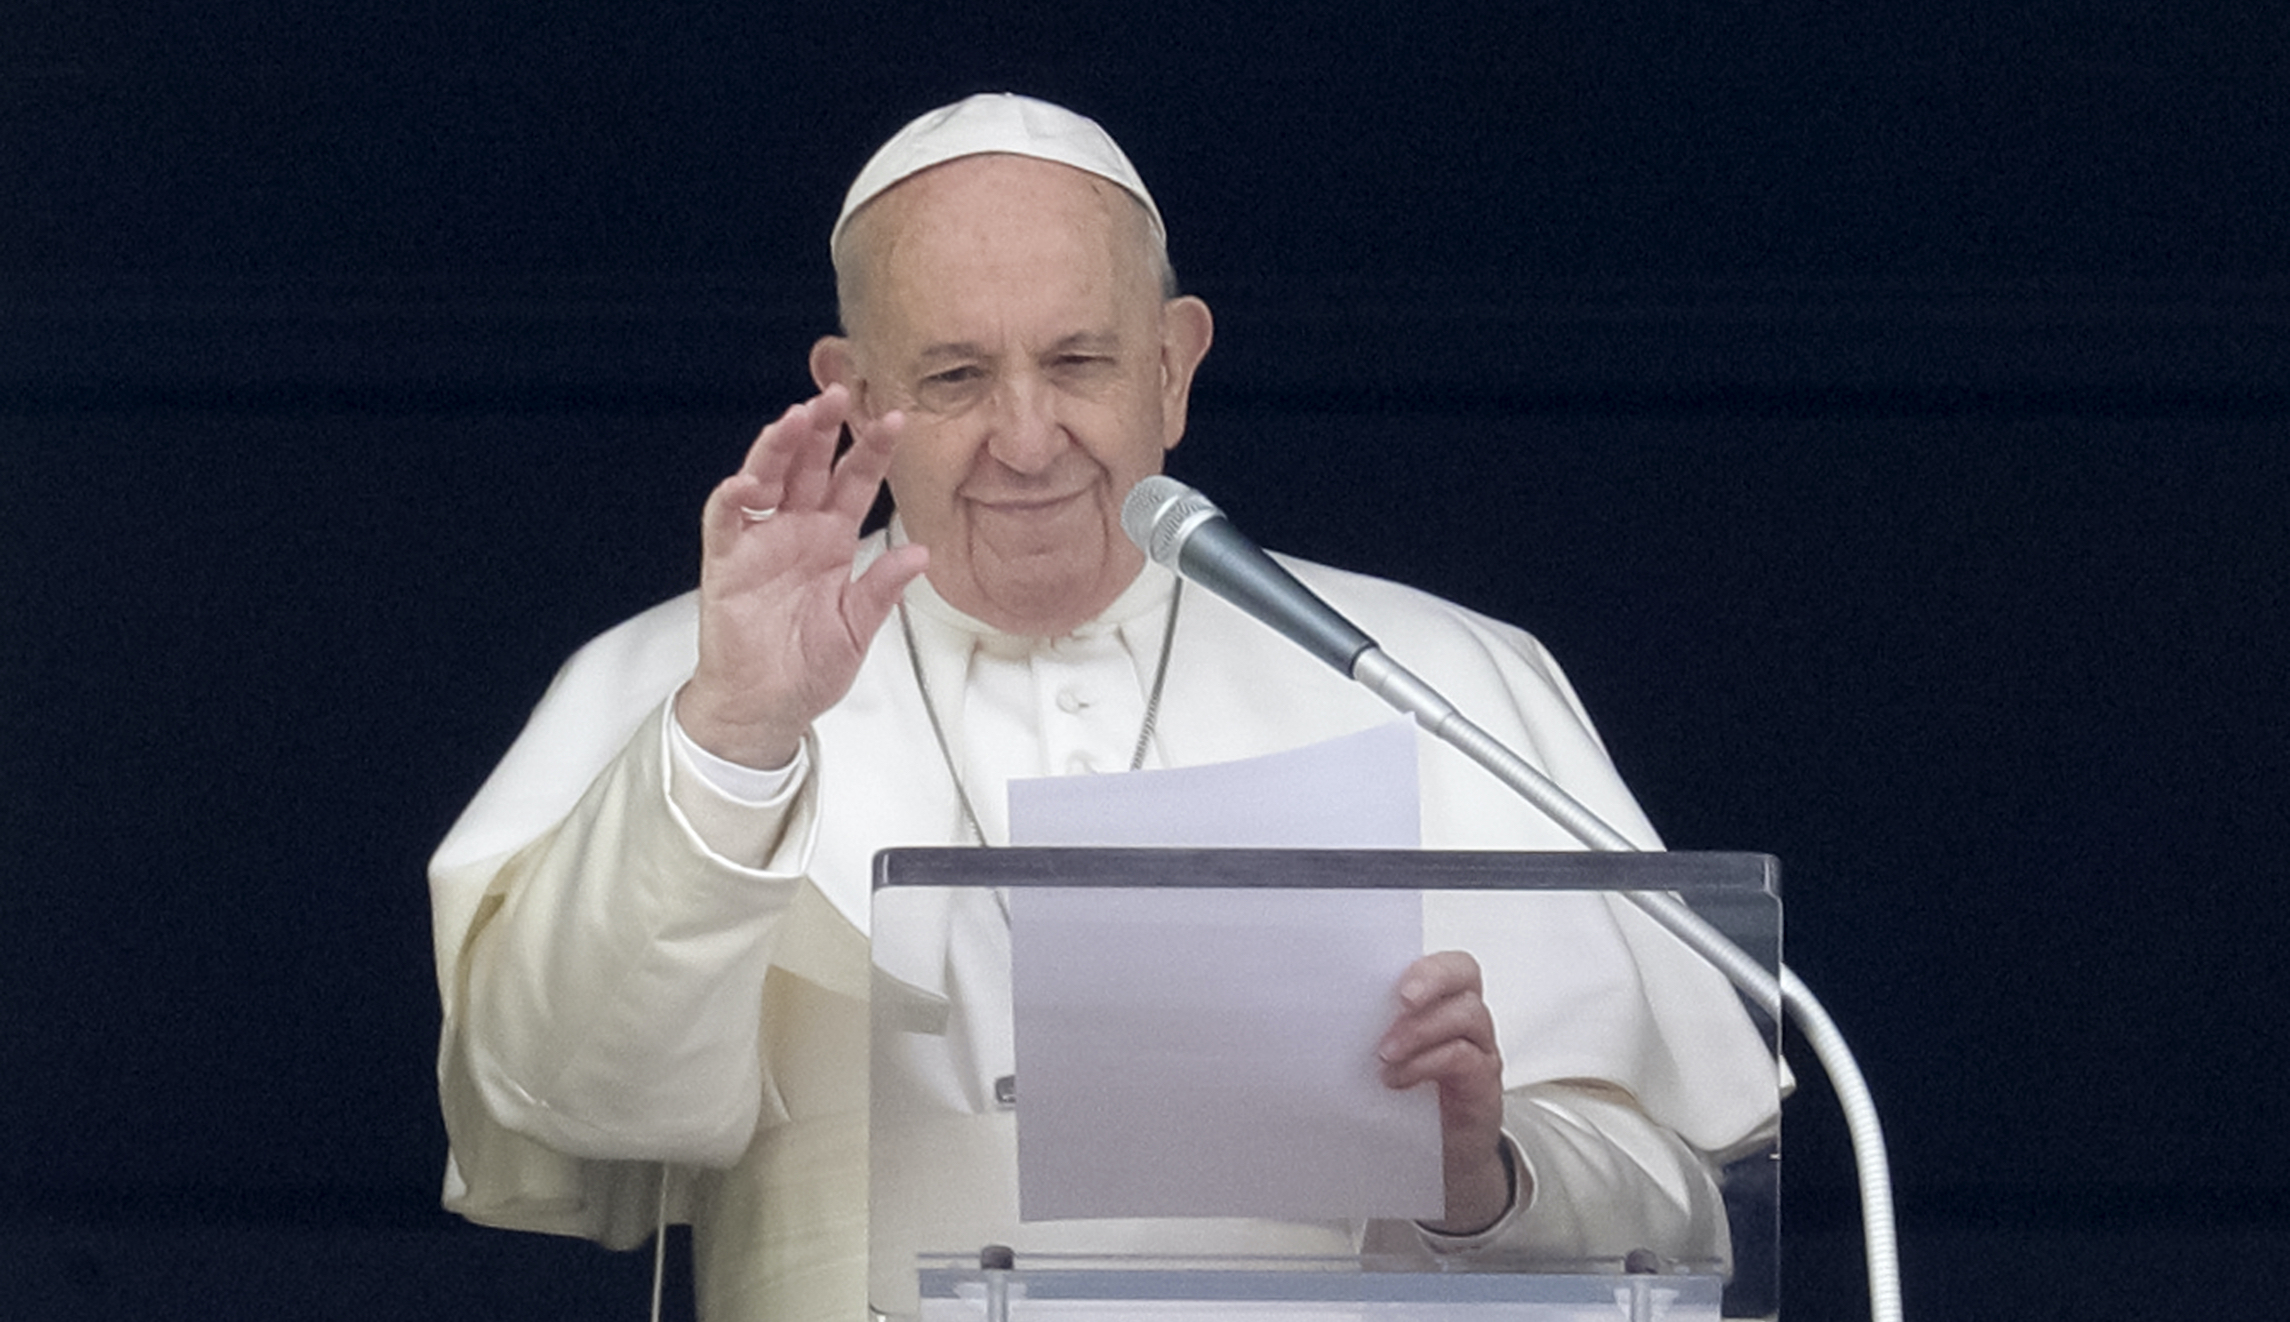 Pope Francis resigning? Catholics wait with bated breath as rumors swirl - Washington Examiner